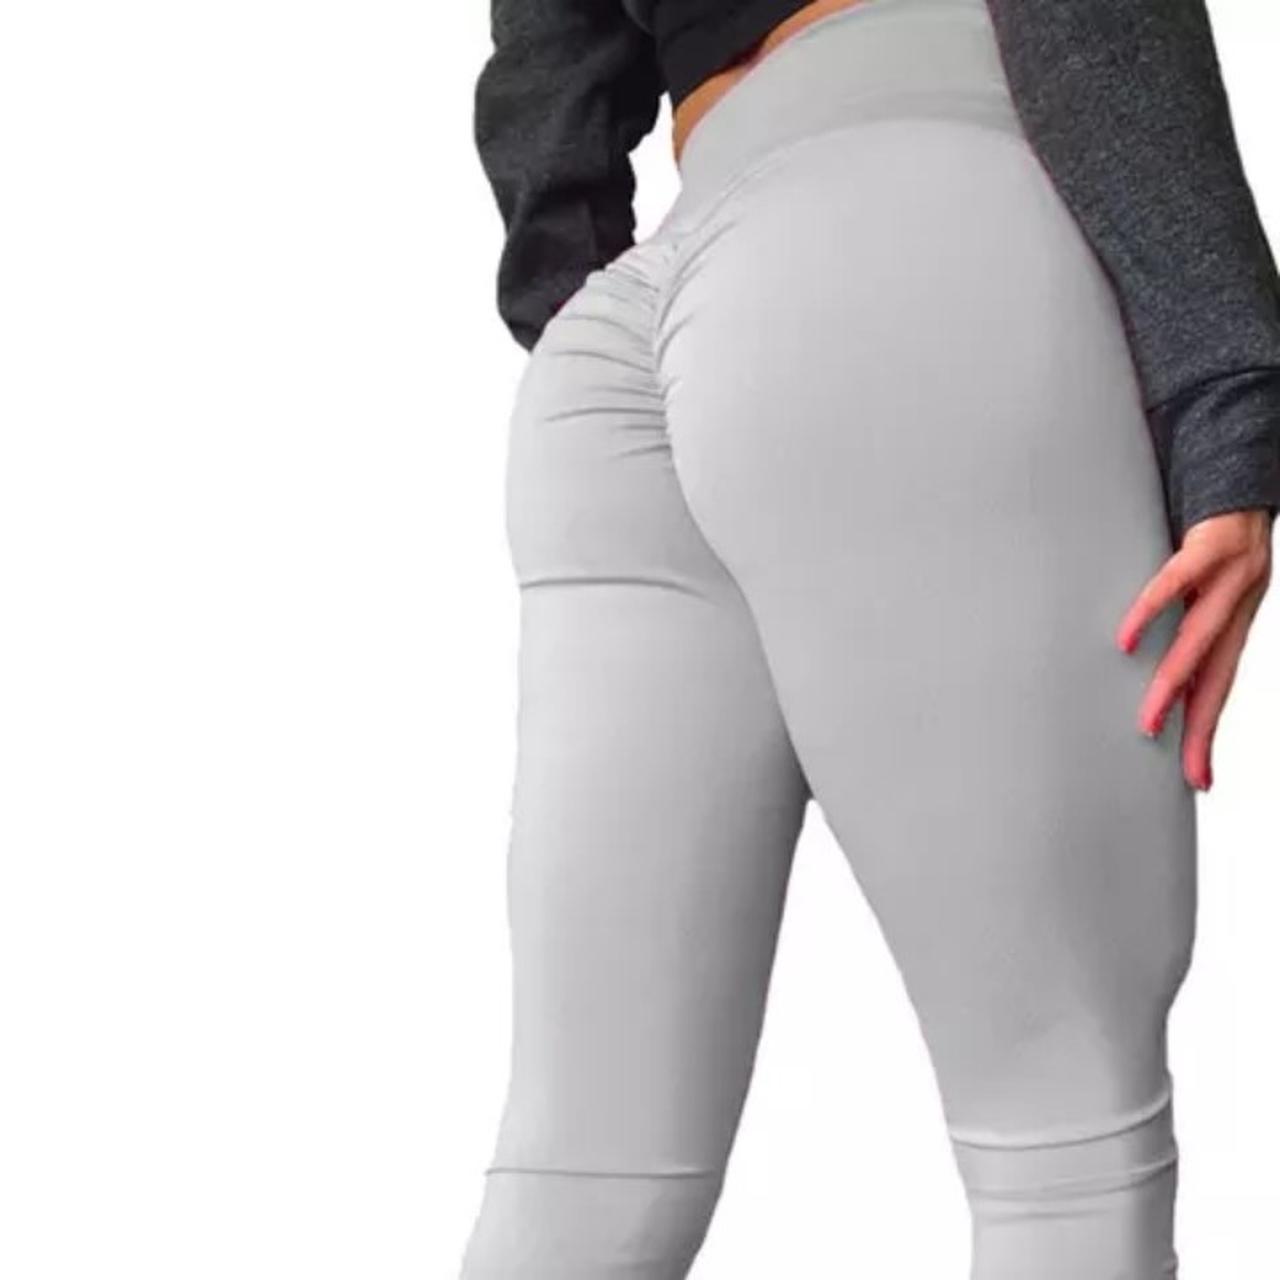 Gray scrunch butt leggings. High waist, thick - Depop